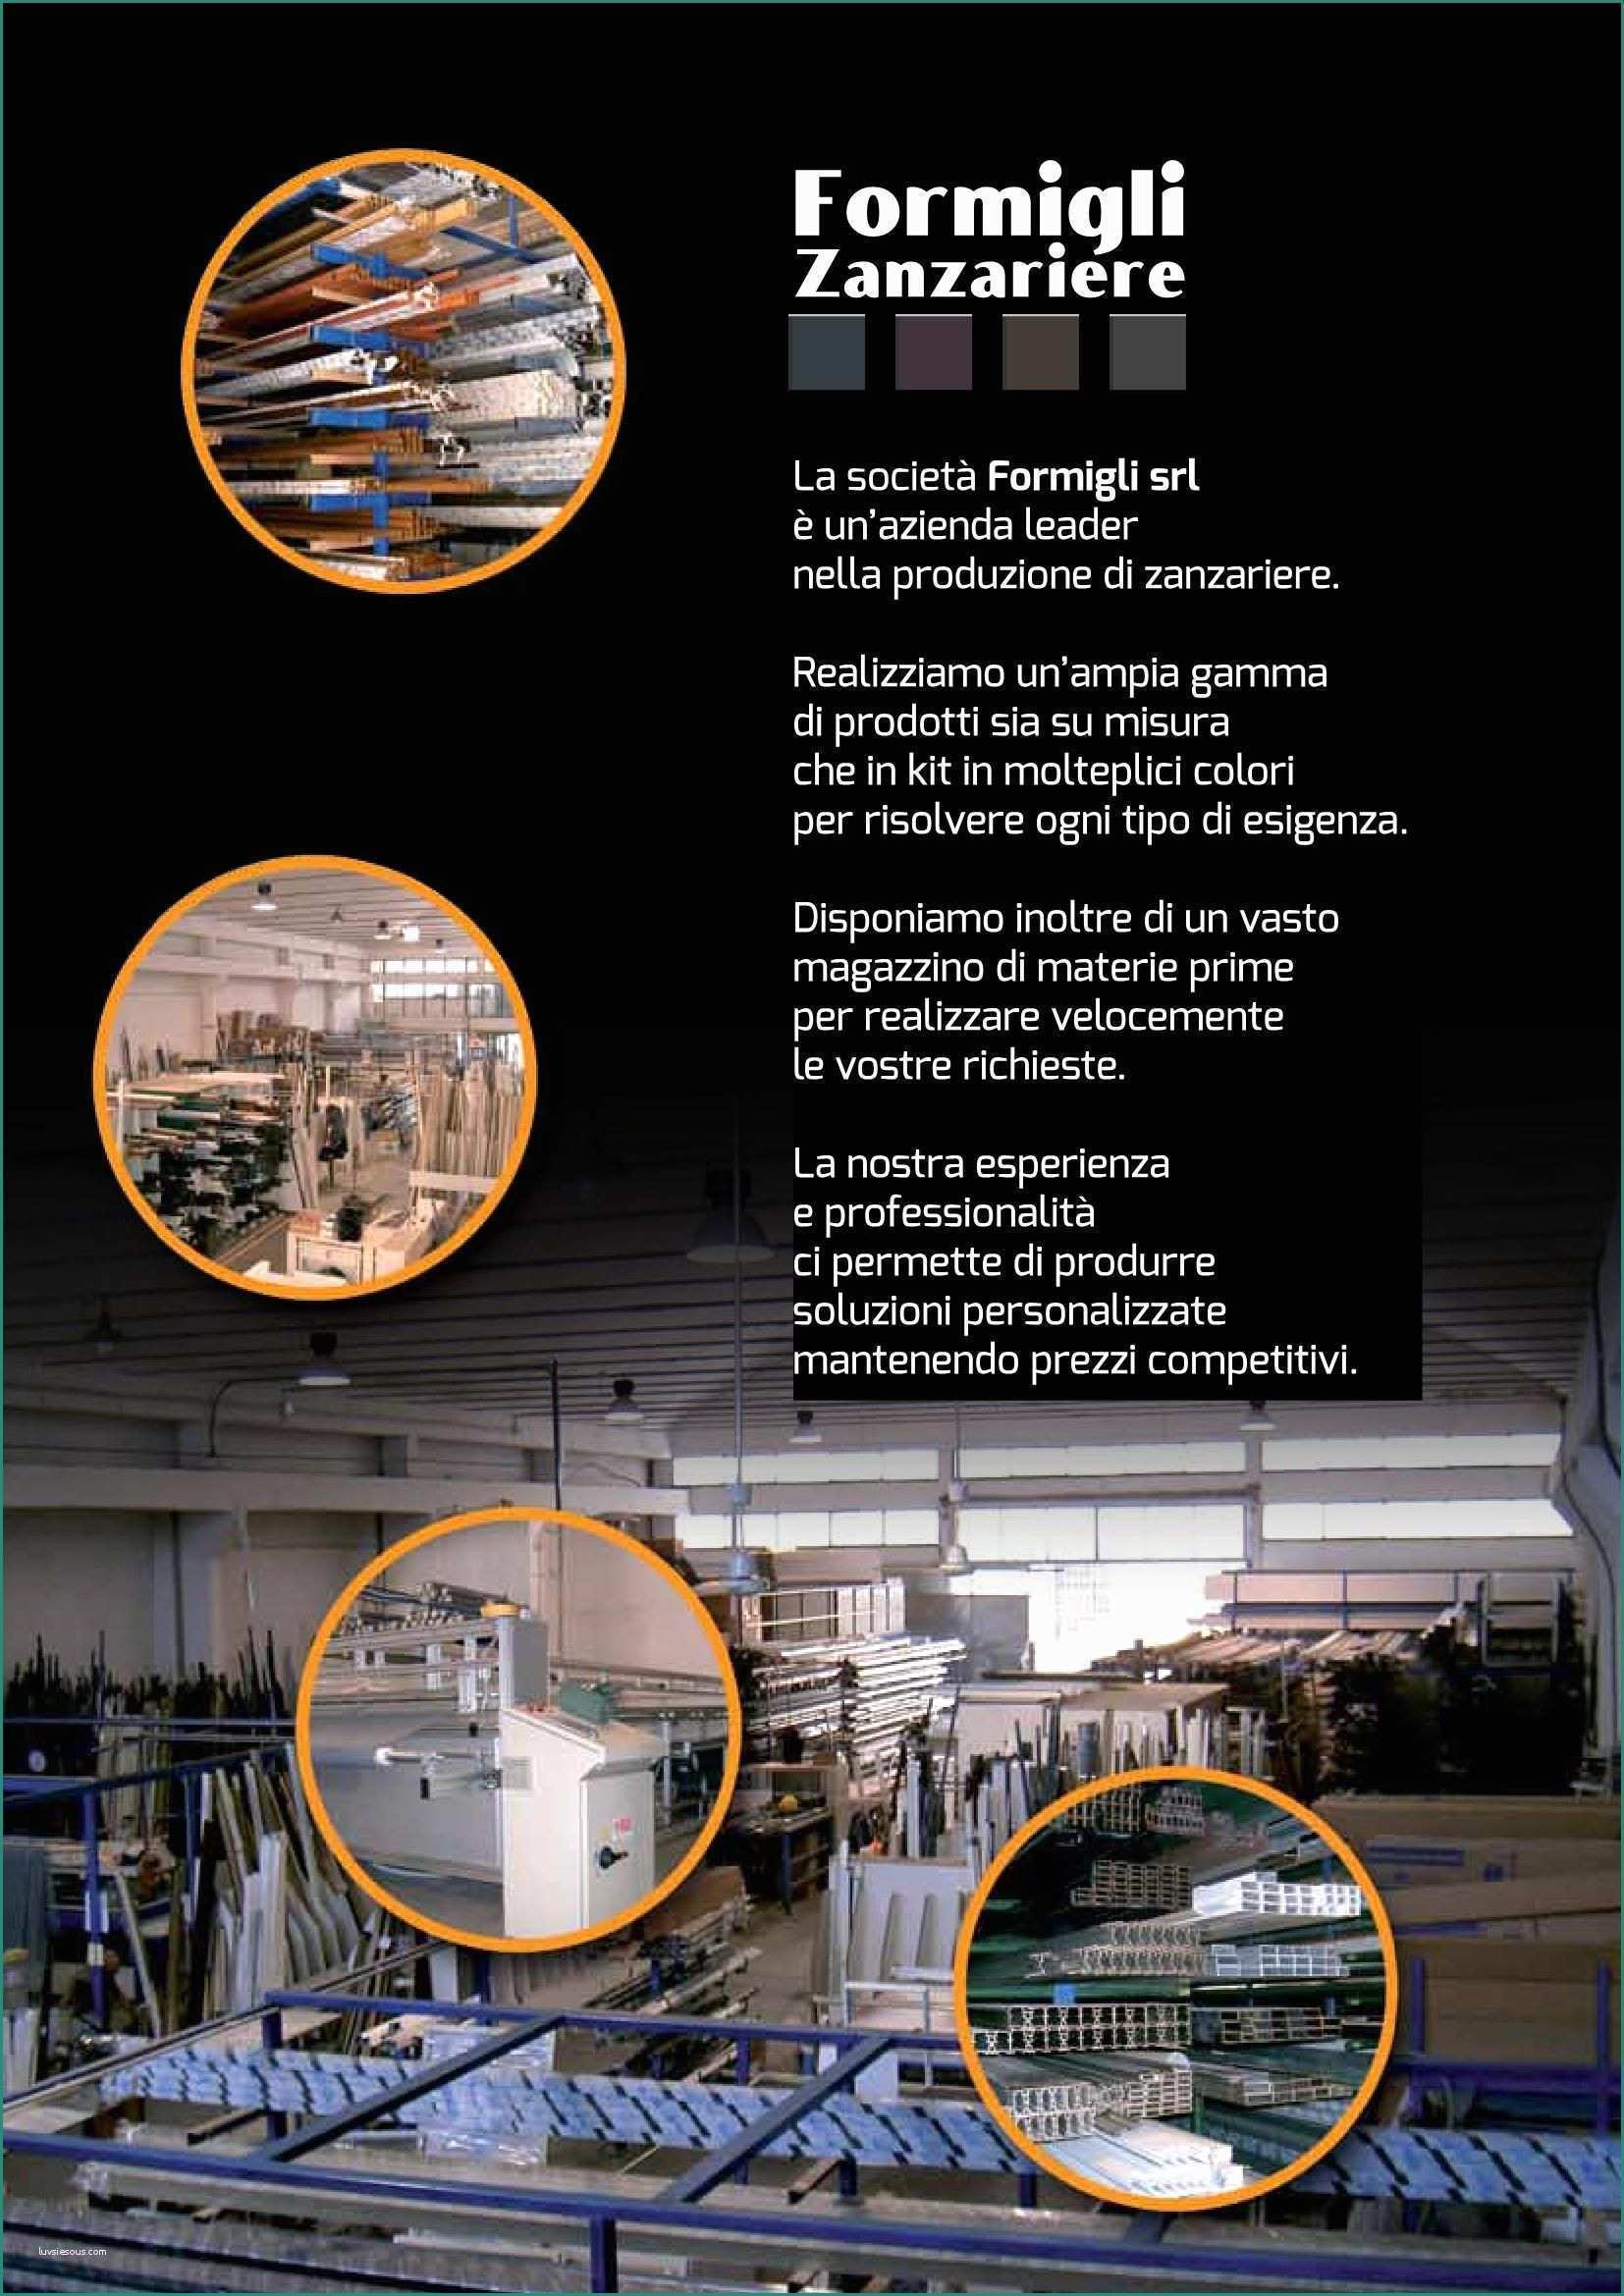 Barre Antintrusione Per Finestre E Catalogo formigli 2015 Web Pages 1 48 Text Version